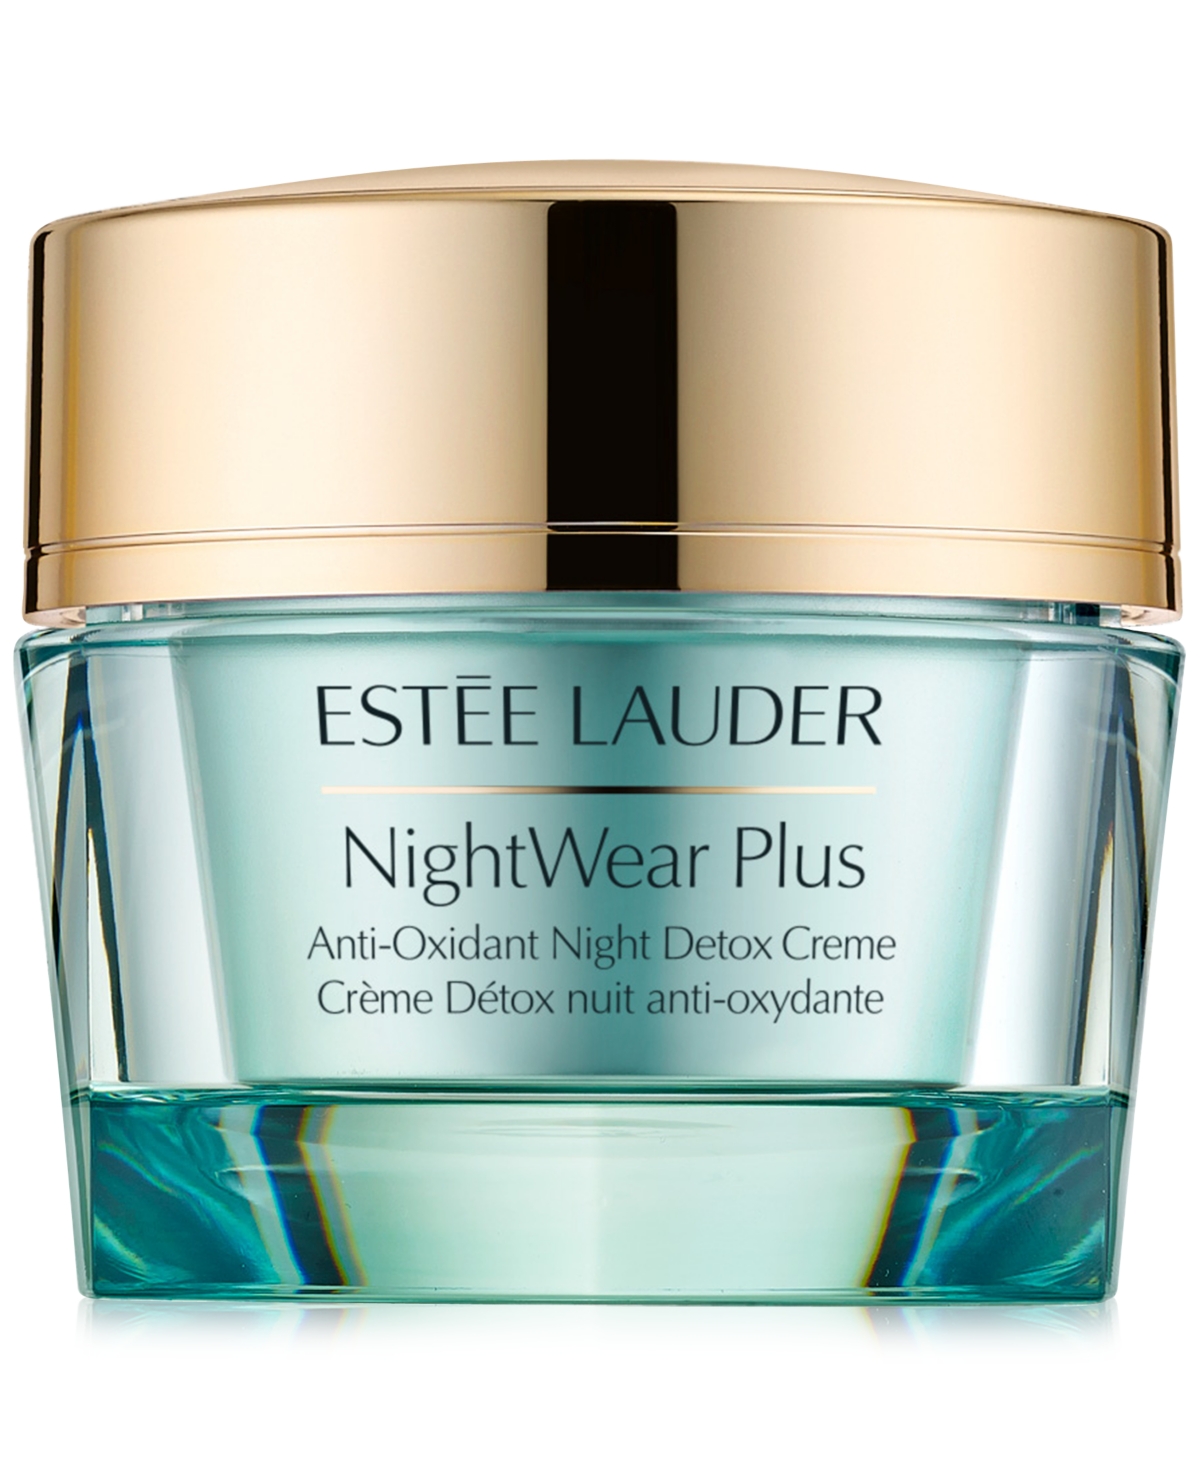 Estée Lauder Nightwear Plus Anti-oxidant Night Detox Face Cream Moisturizer, 1.7 oz In No Color